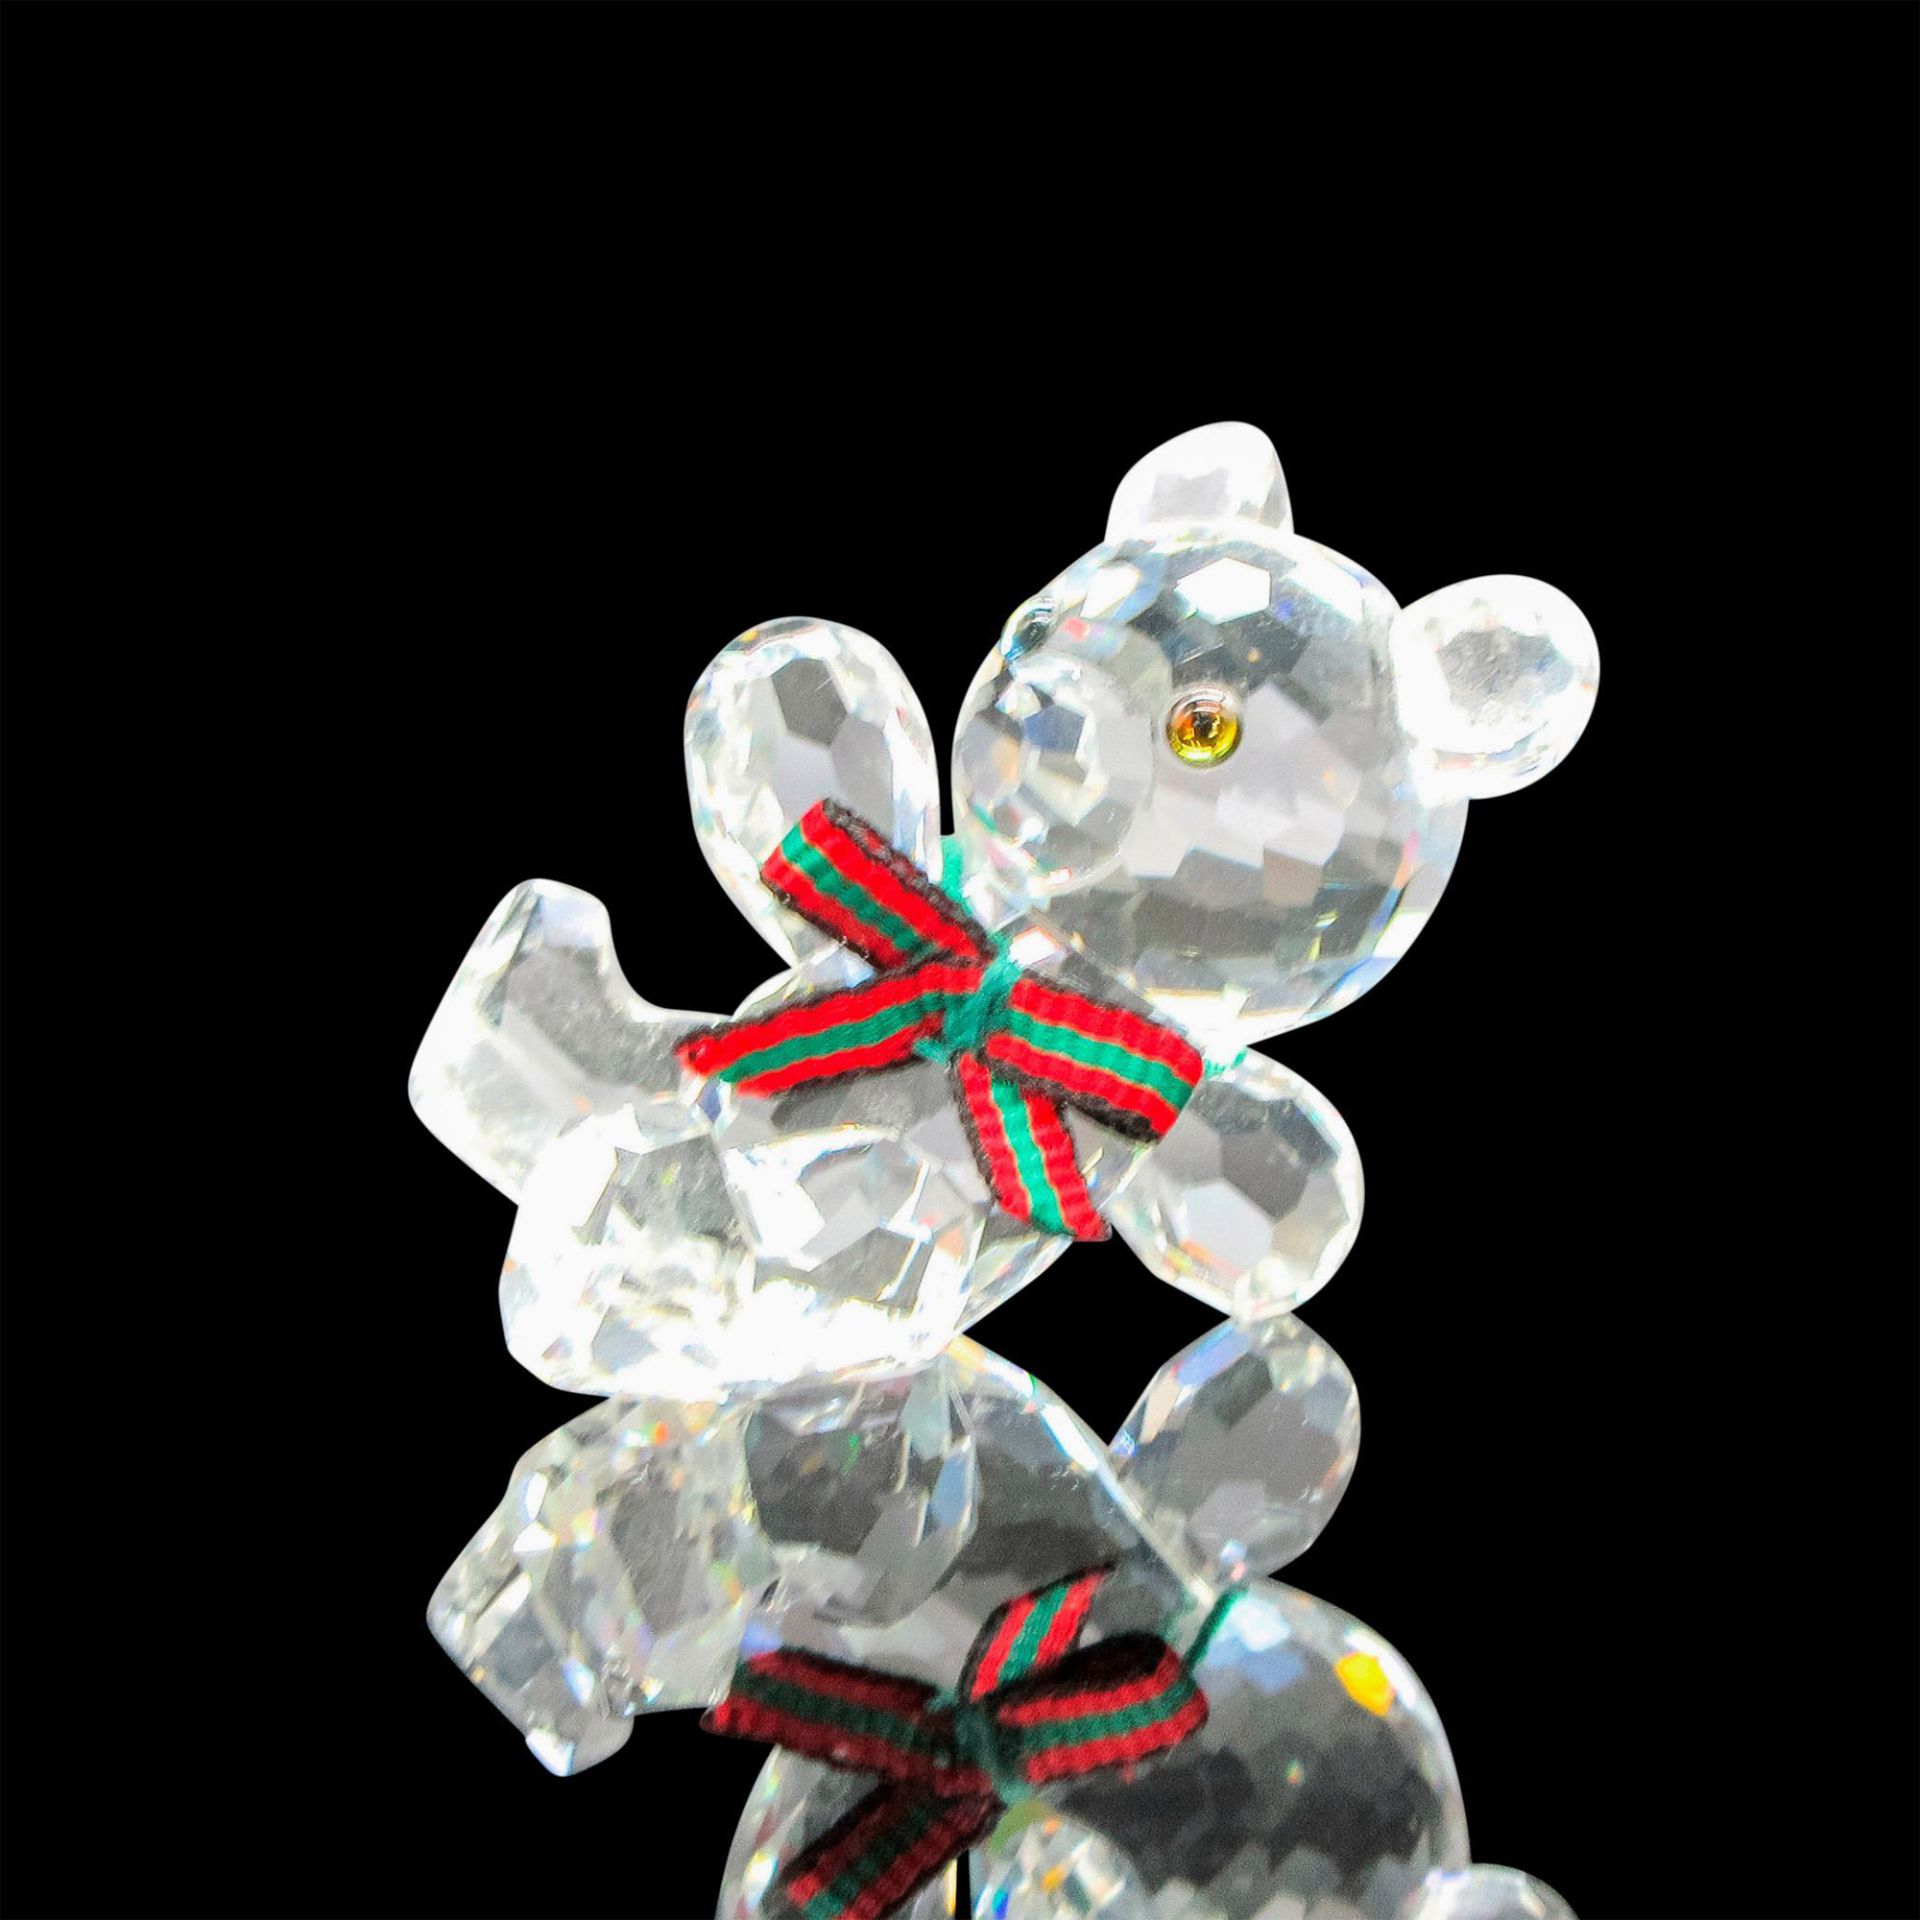 Swarovski Crystal Figurine, Reclining Teddy Bear